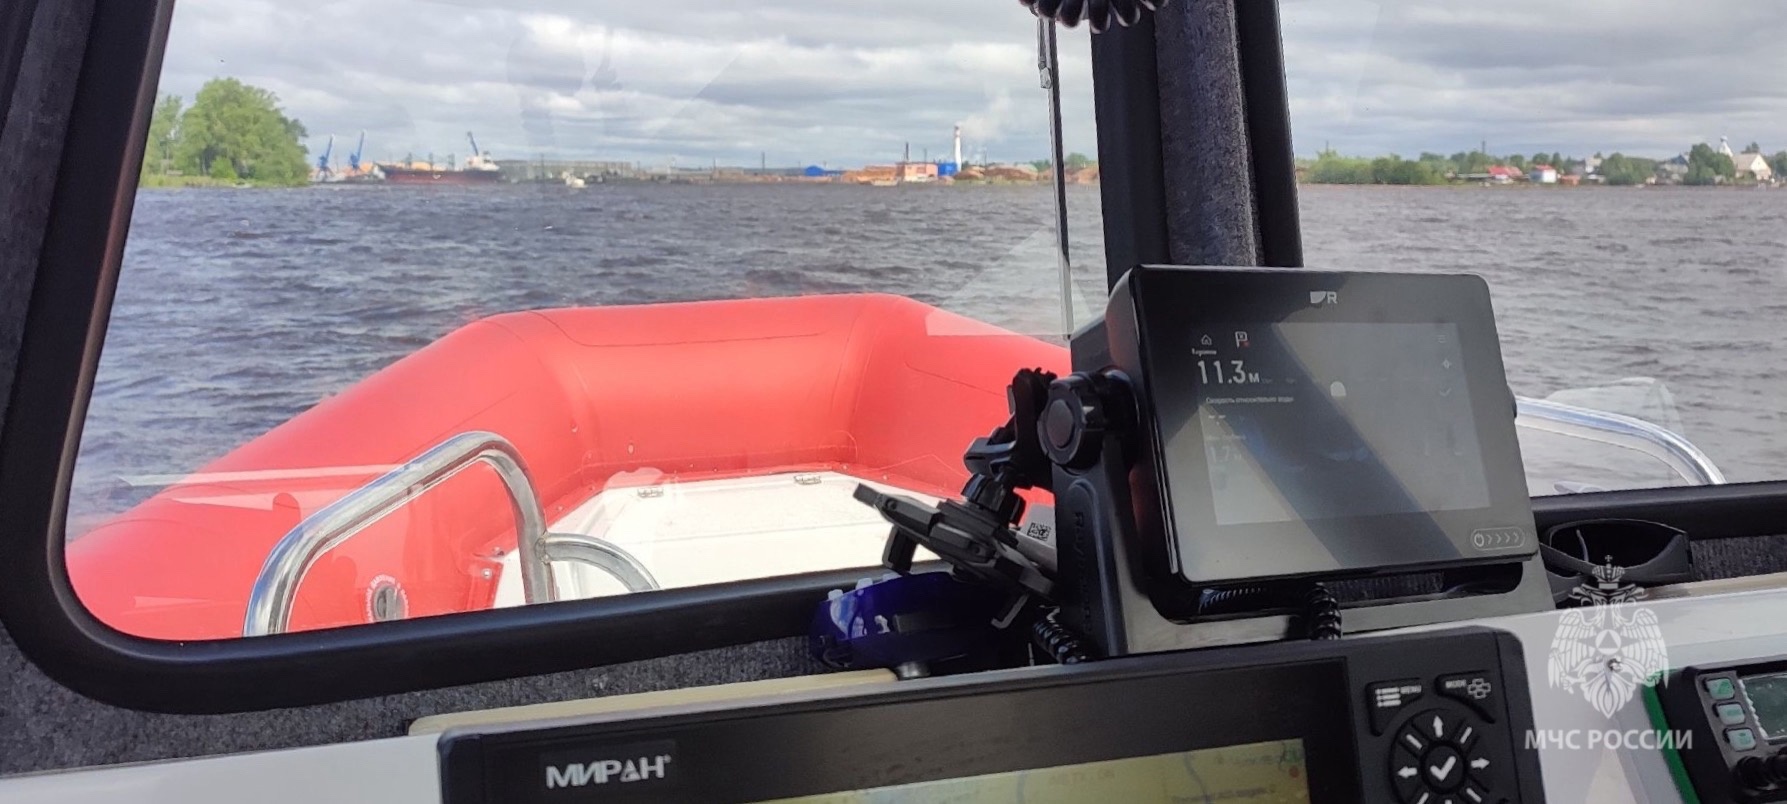 В Белом море продолжаются поиски подростка, пропавшего на лодке в шторм 